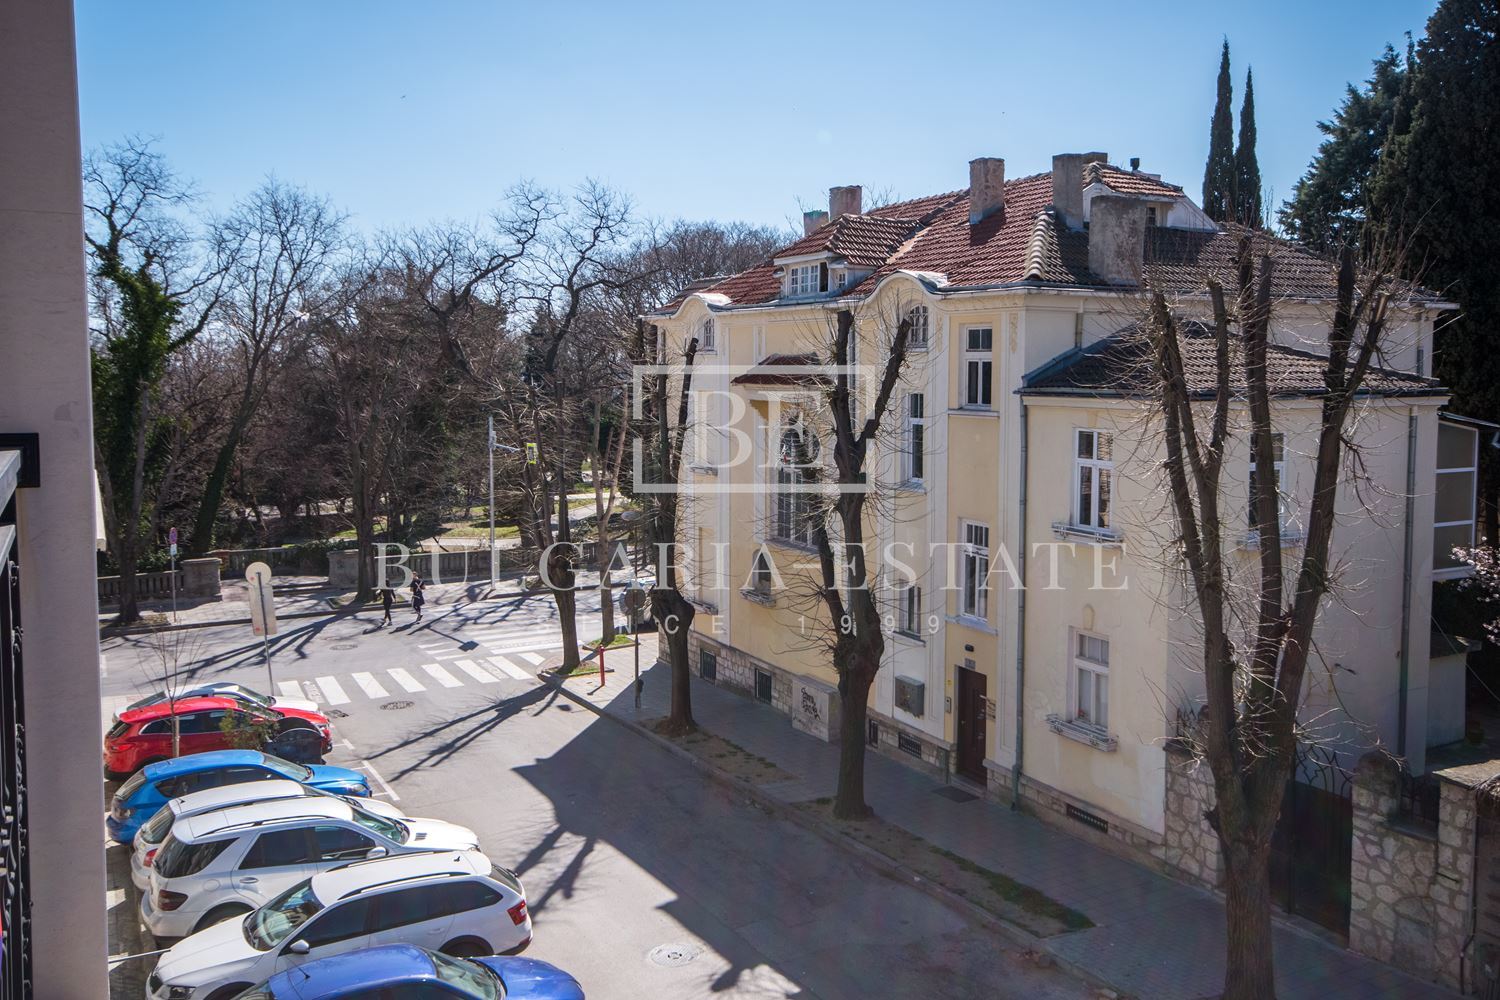 Тристаен апартамент в центъра на гр. Варна, до входа на Летния Театър, ул. Македония, Музикалното - 0